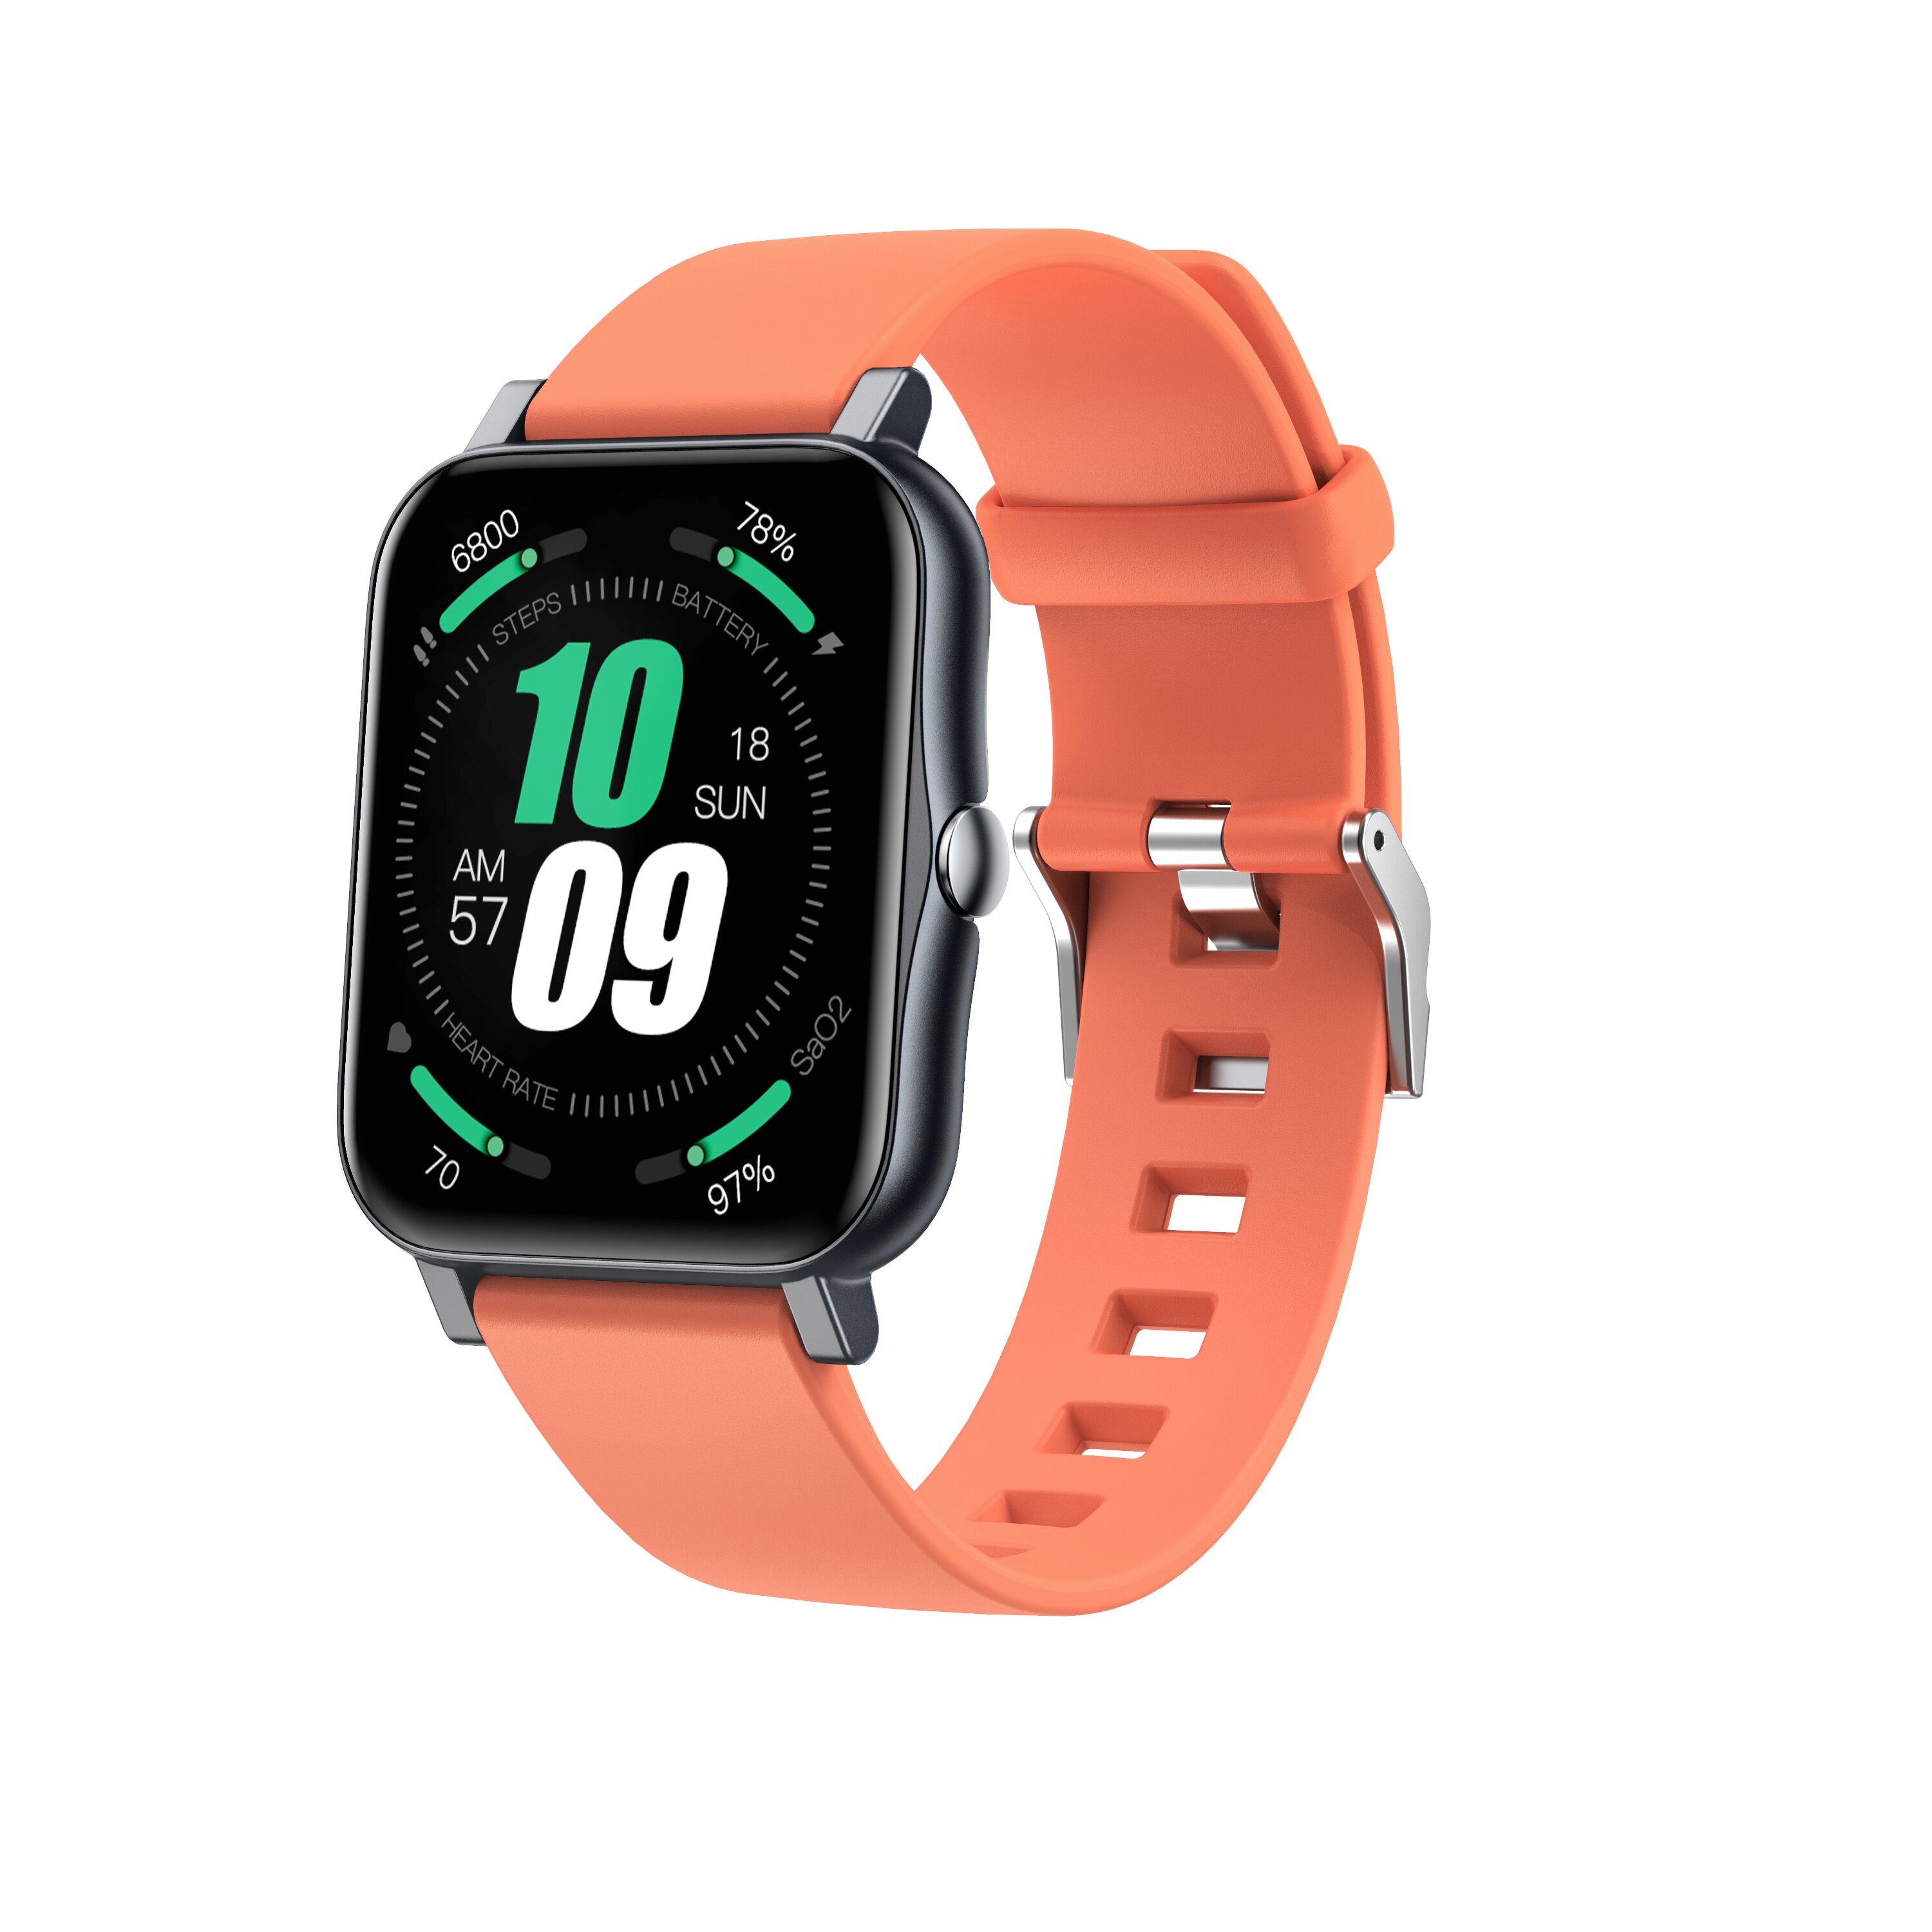 Smartwatch voll berühren S80 OutdooSport Modus Plus Clever Uhr Männer Herz Bewertung Monitor Für iOS Android Uhren Profi: cheng